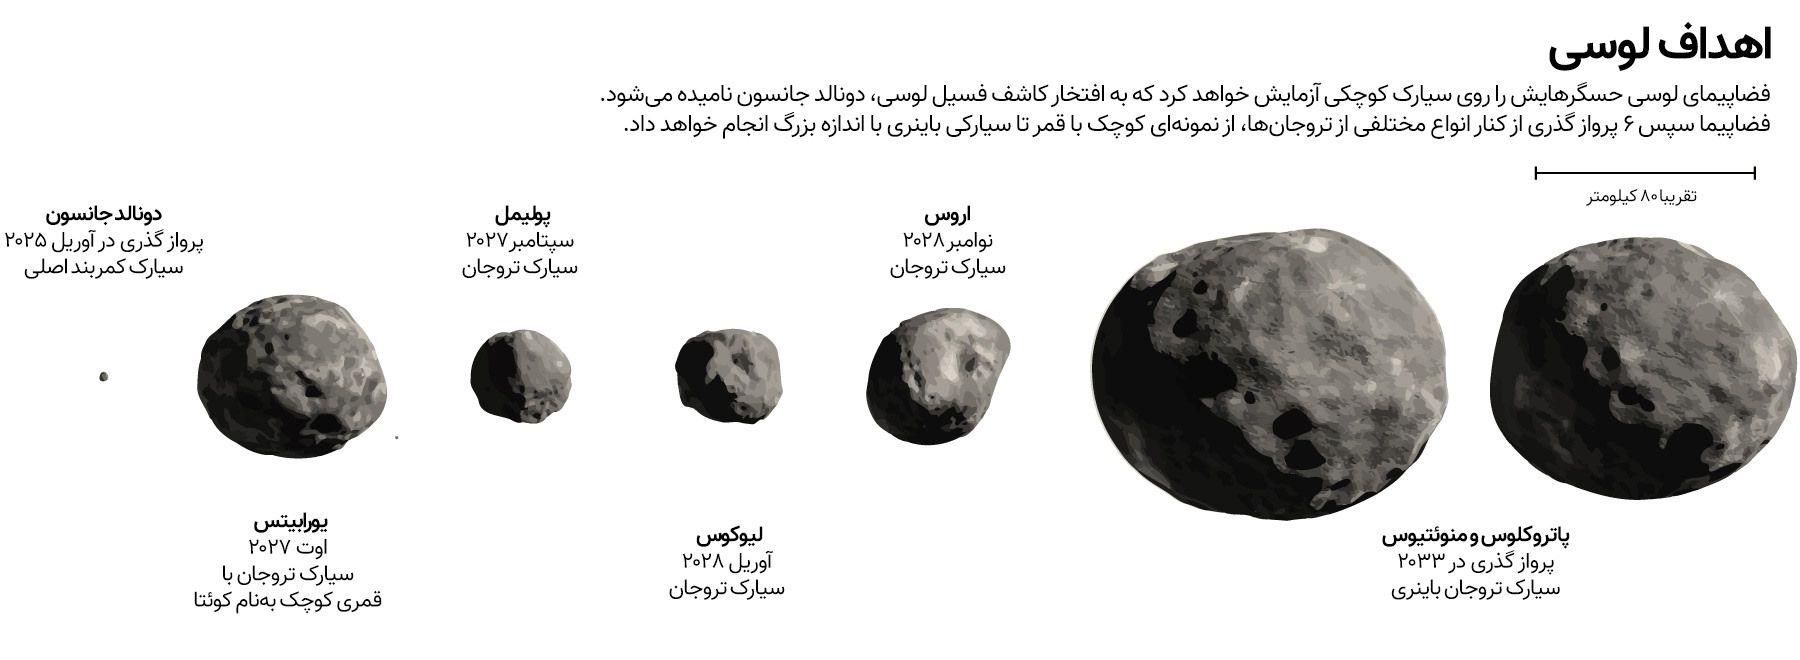 سیارک تروا تحقیقات لوسی را هدف قرار می دهد